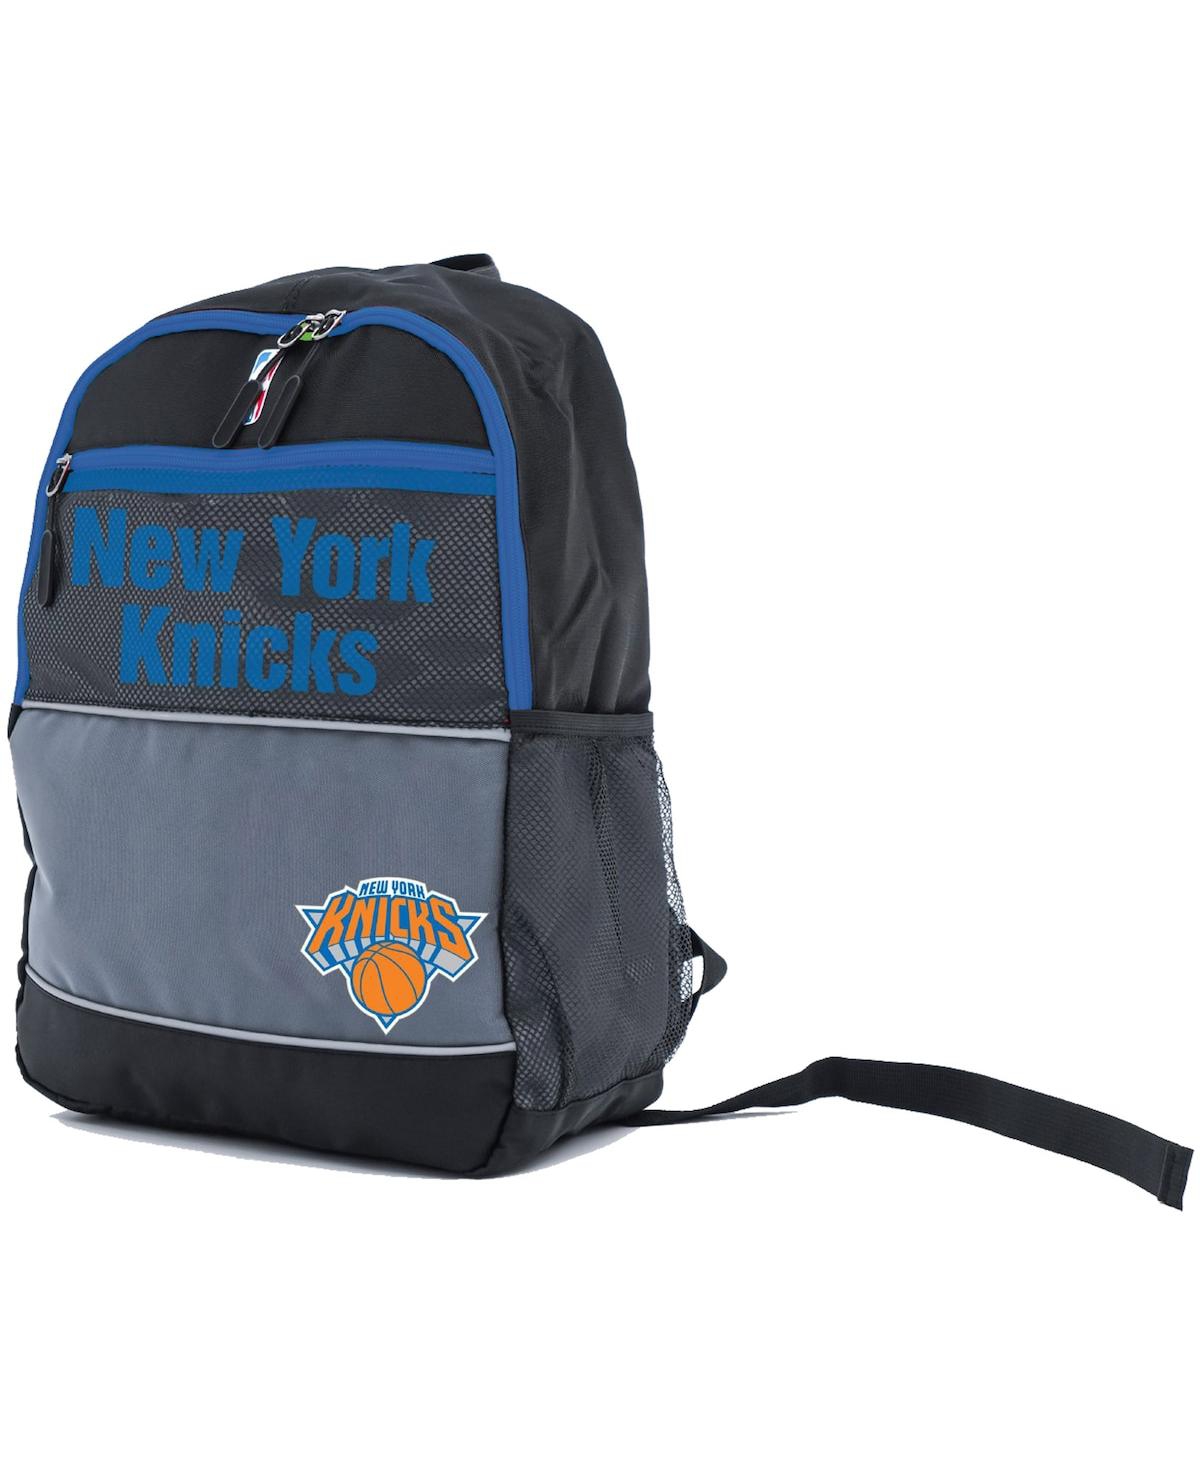 New York Knicks Mesh Backpack - Black